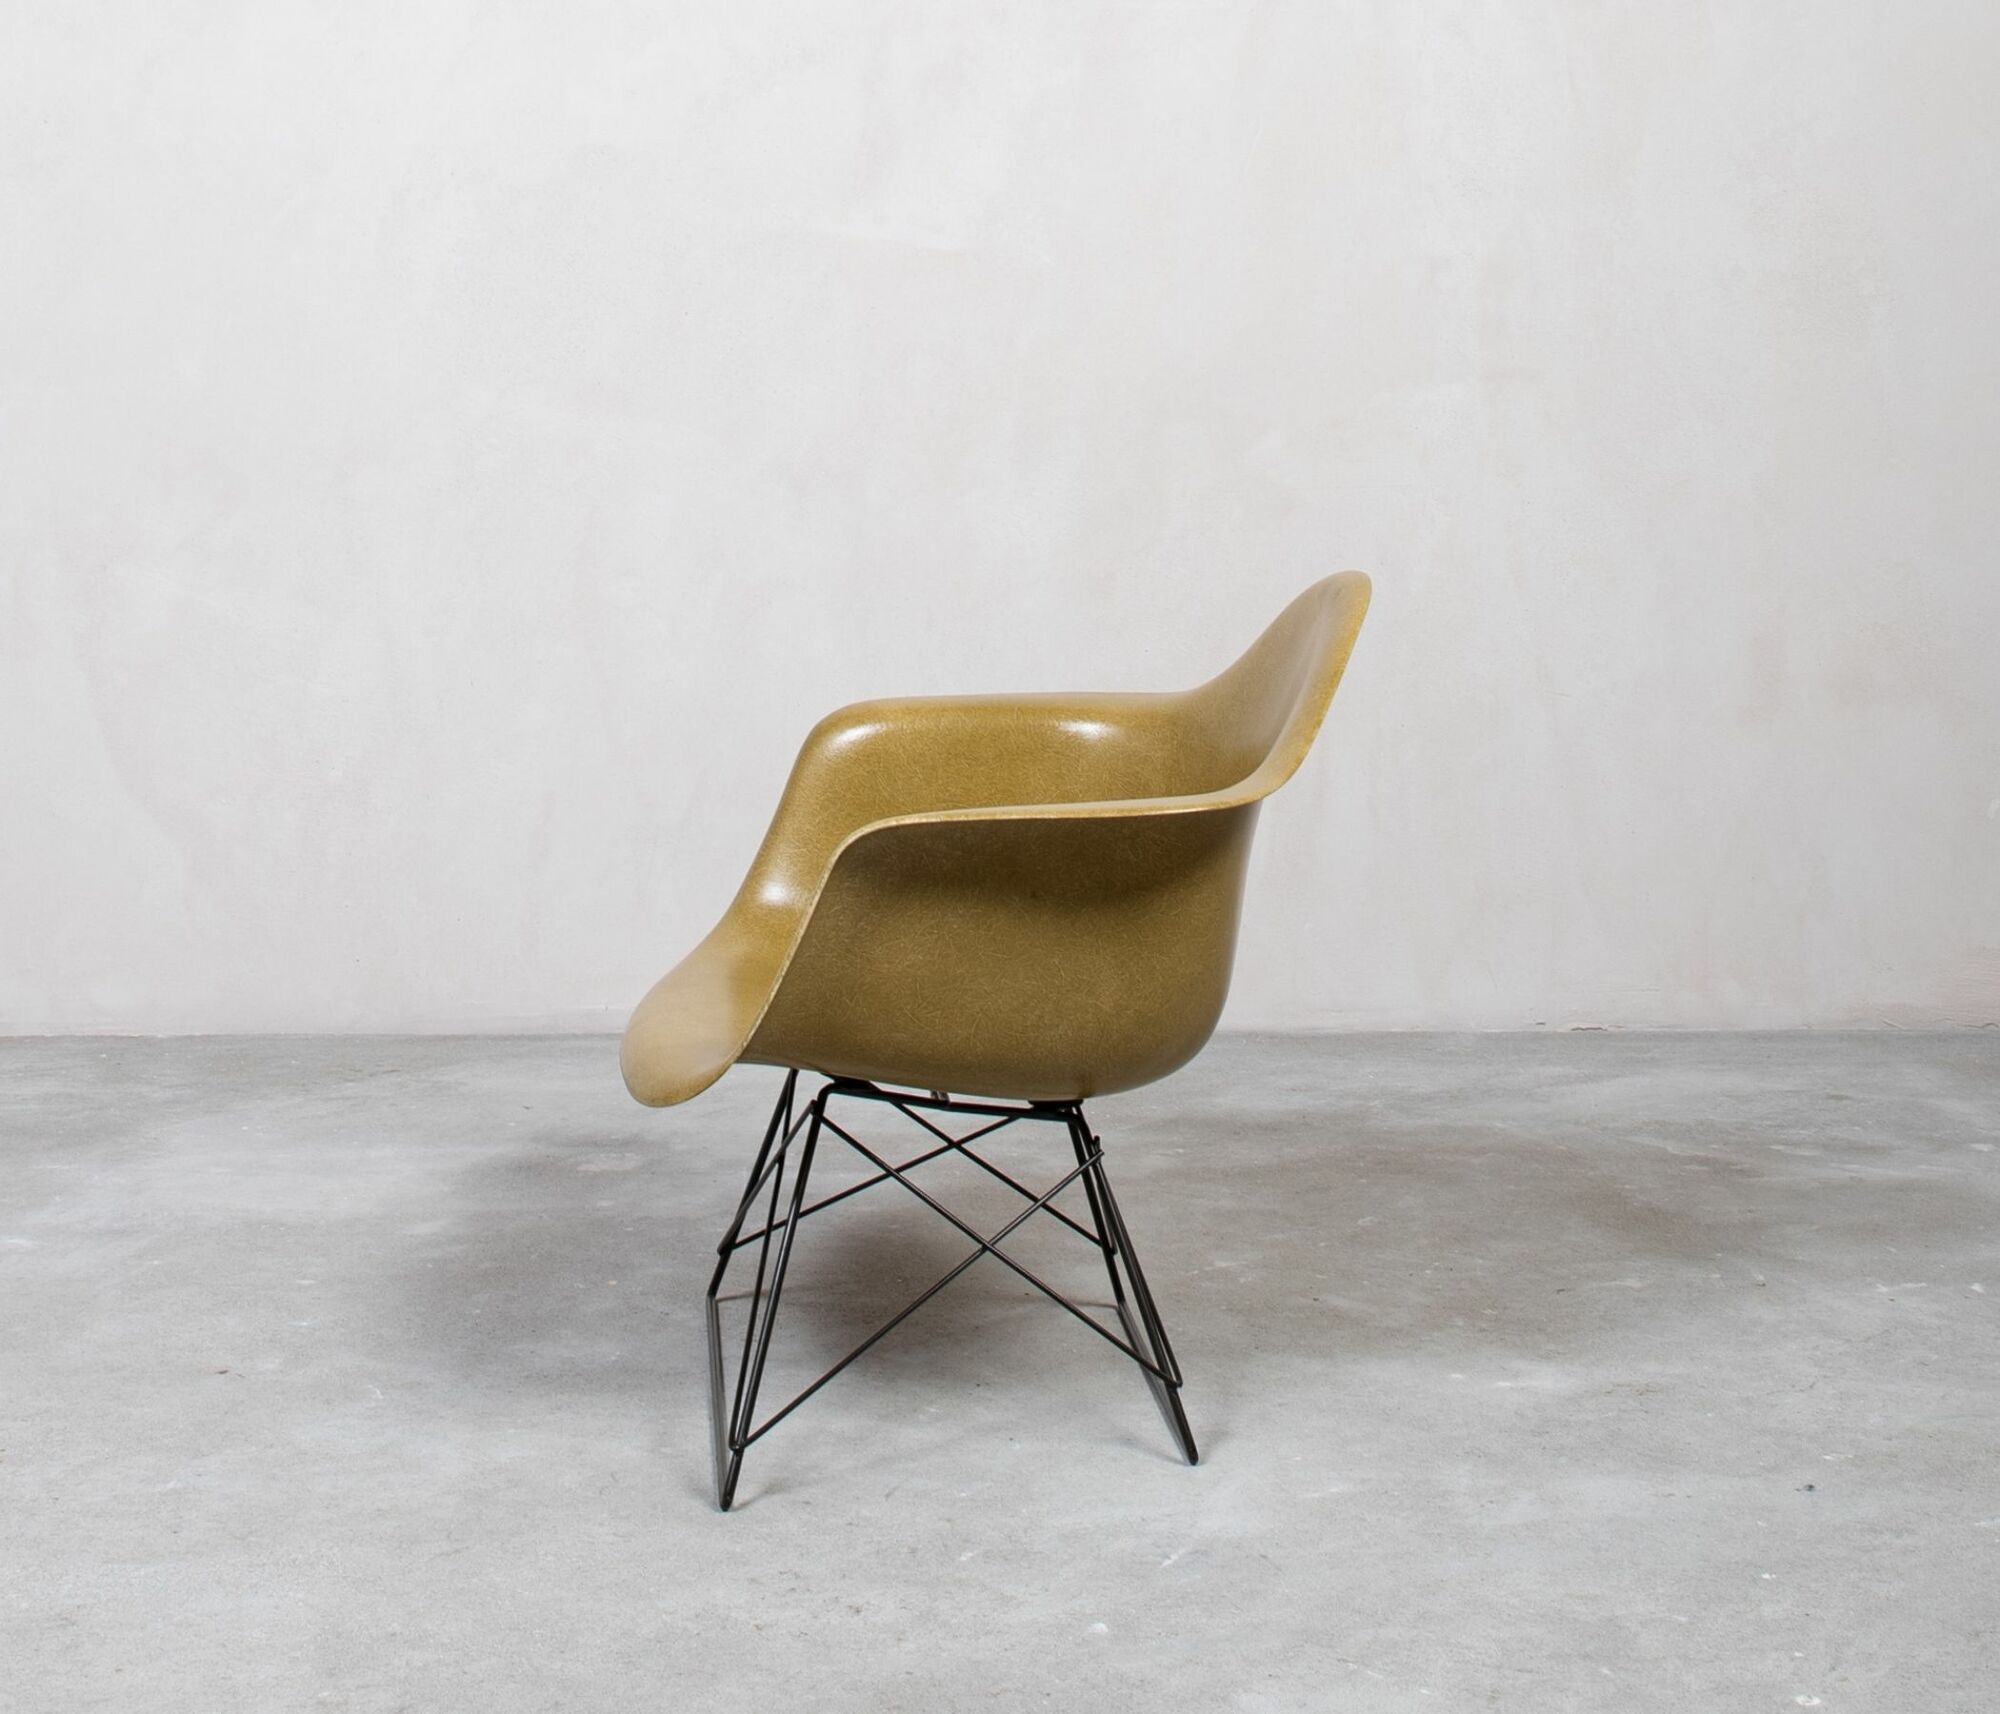 Eames Fiberglass LAR Chair by Herman Miller Khaki 2